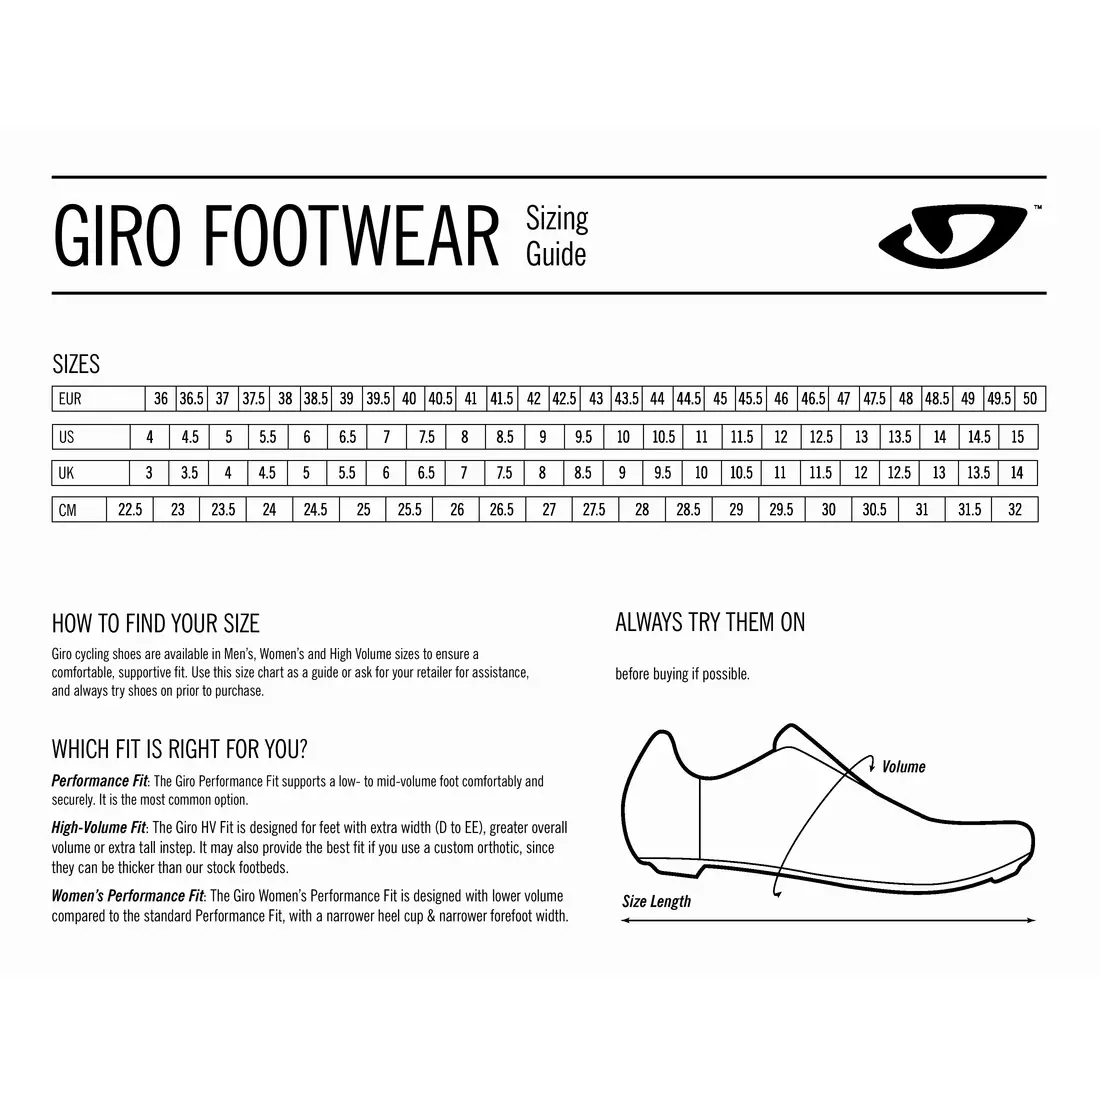 GIRO TECHNE - pánské fluoro boty na kolo